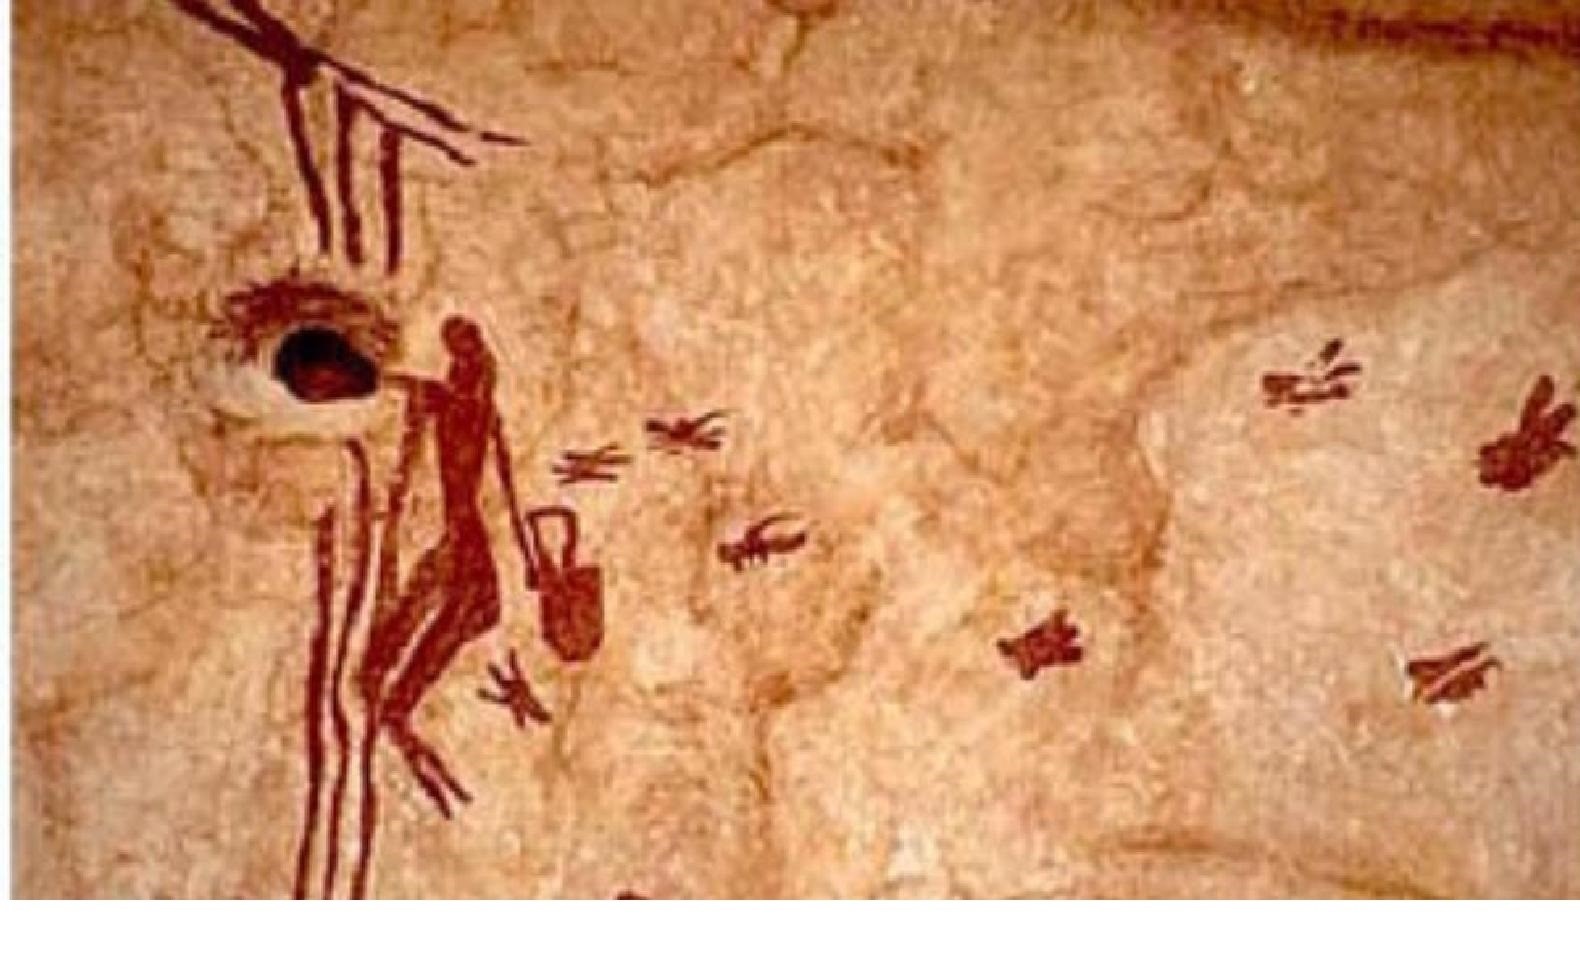 **Figura 4.12. Pintura rupestre de más de 8000 años, en la Cueva de la Araña, Valencia, España.**